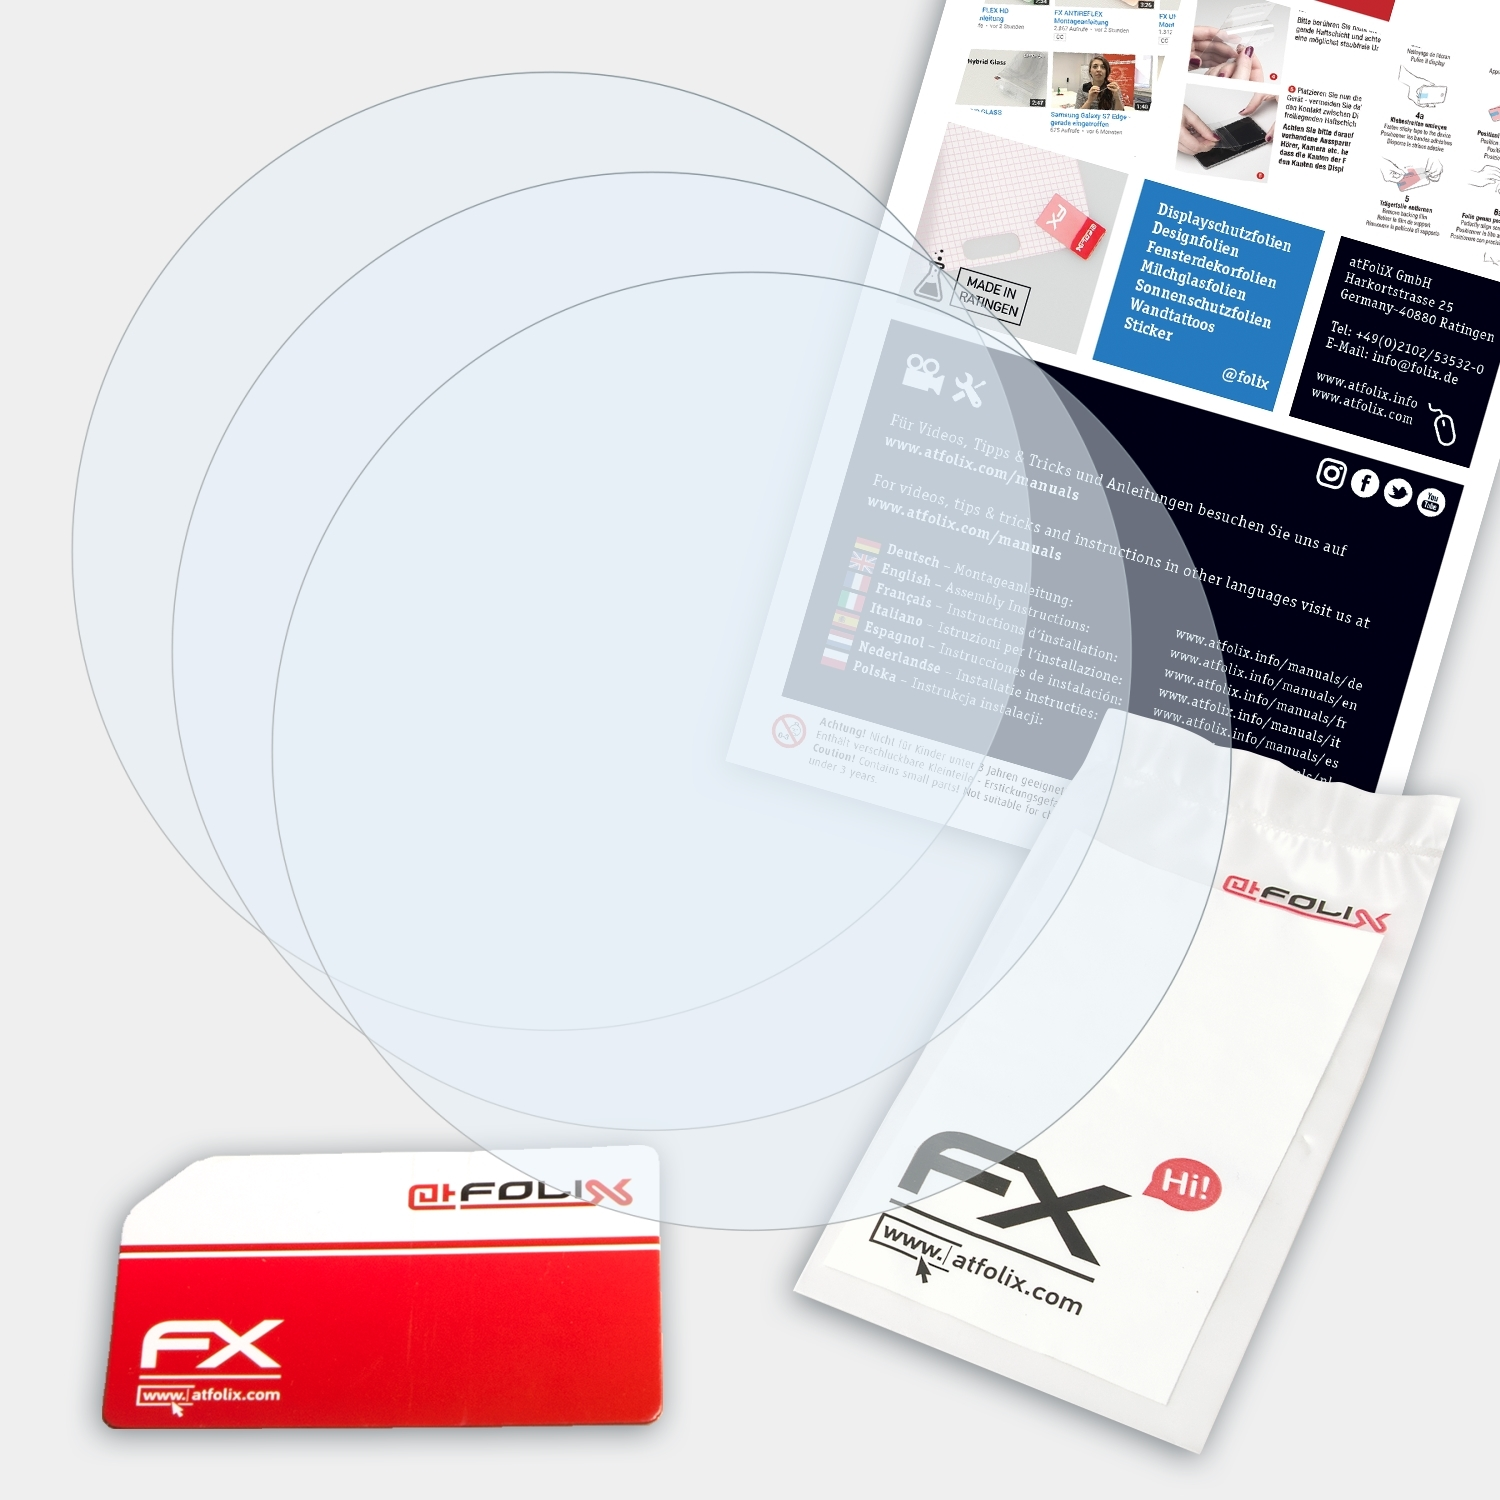 FX-Clear Displayschutz(für ATFOLIX Suunto Ambit3 Run) 3x